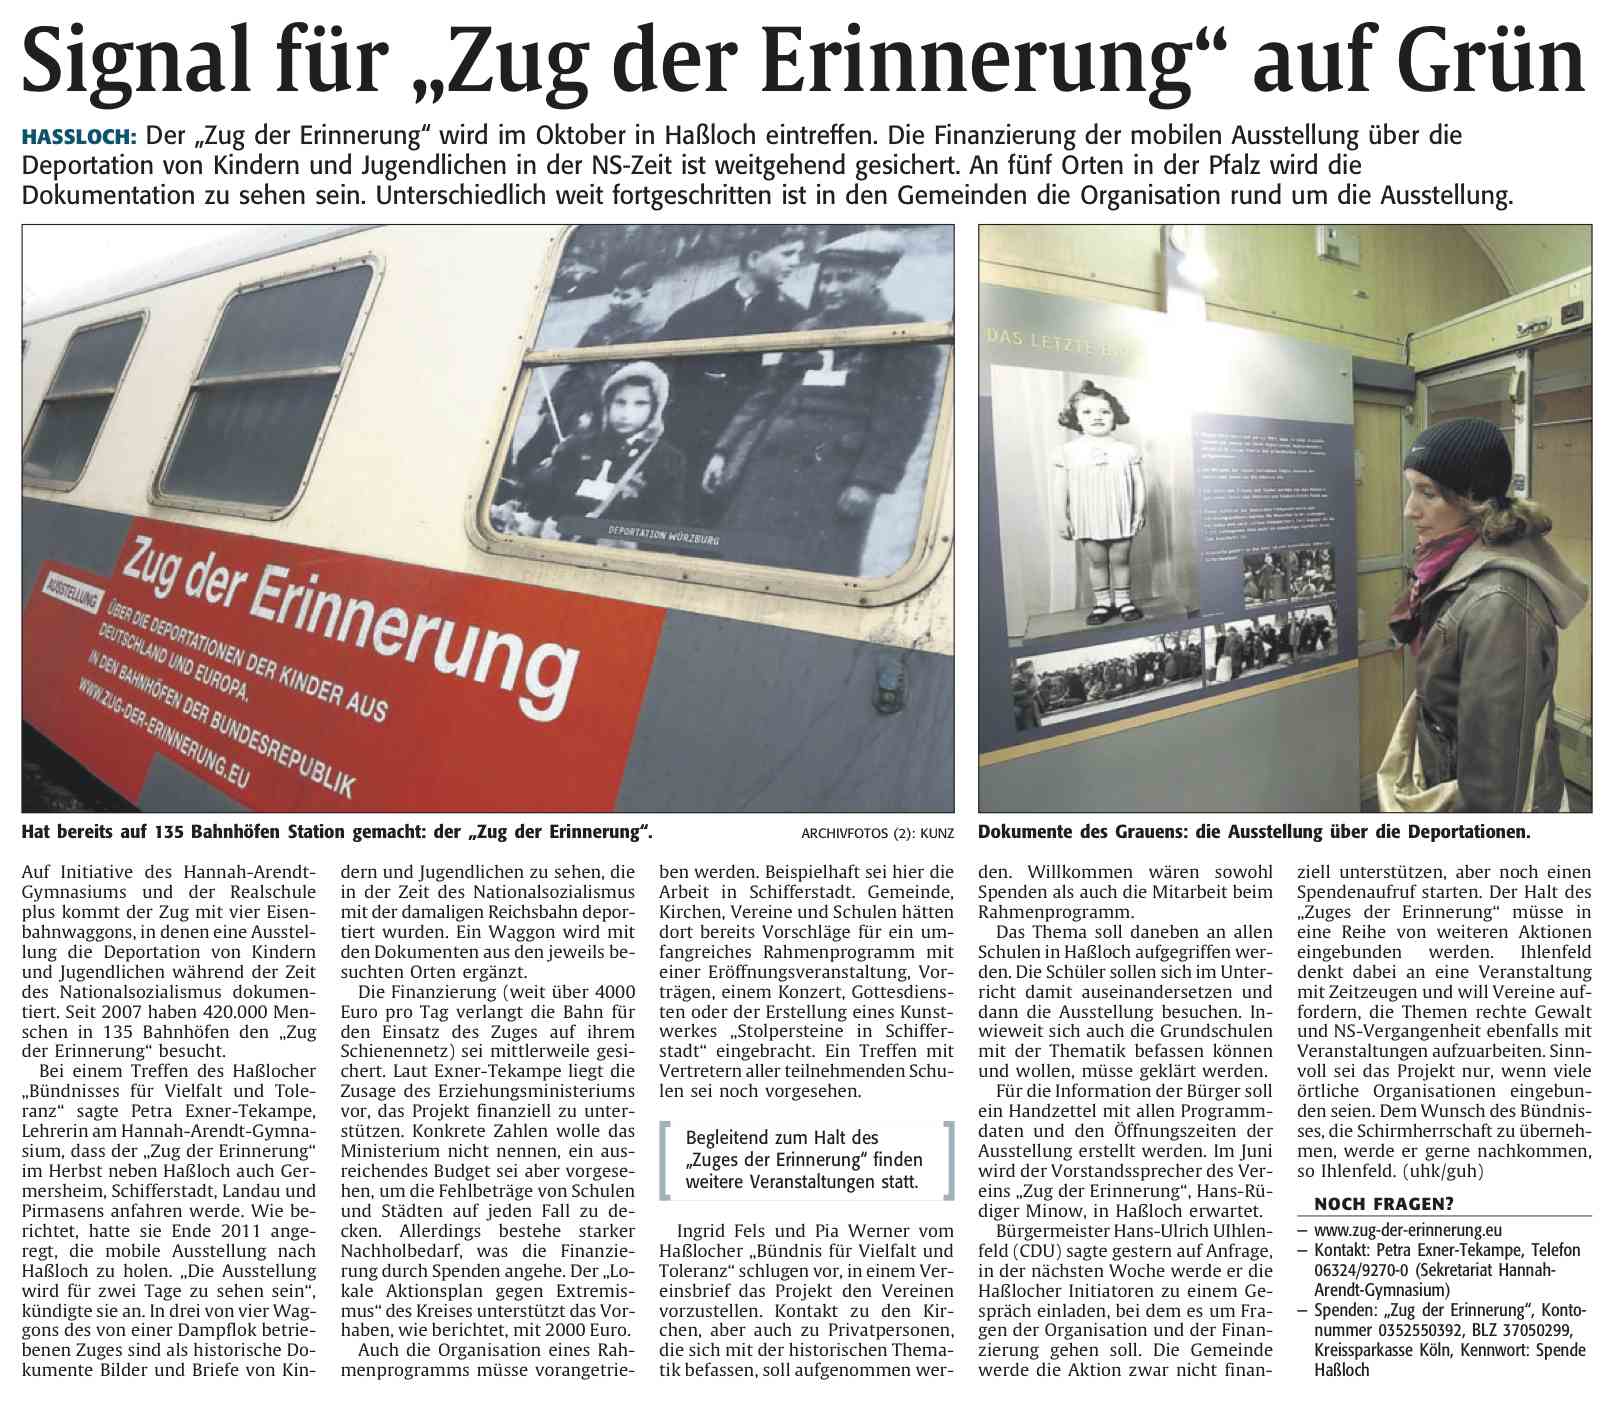 Die Rheinpfalz vom 28.3.2012 - Signal für Zug der Erinnerung auf grün